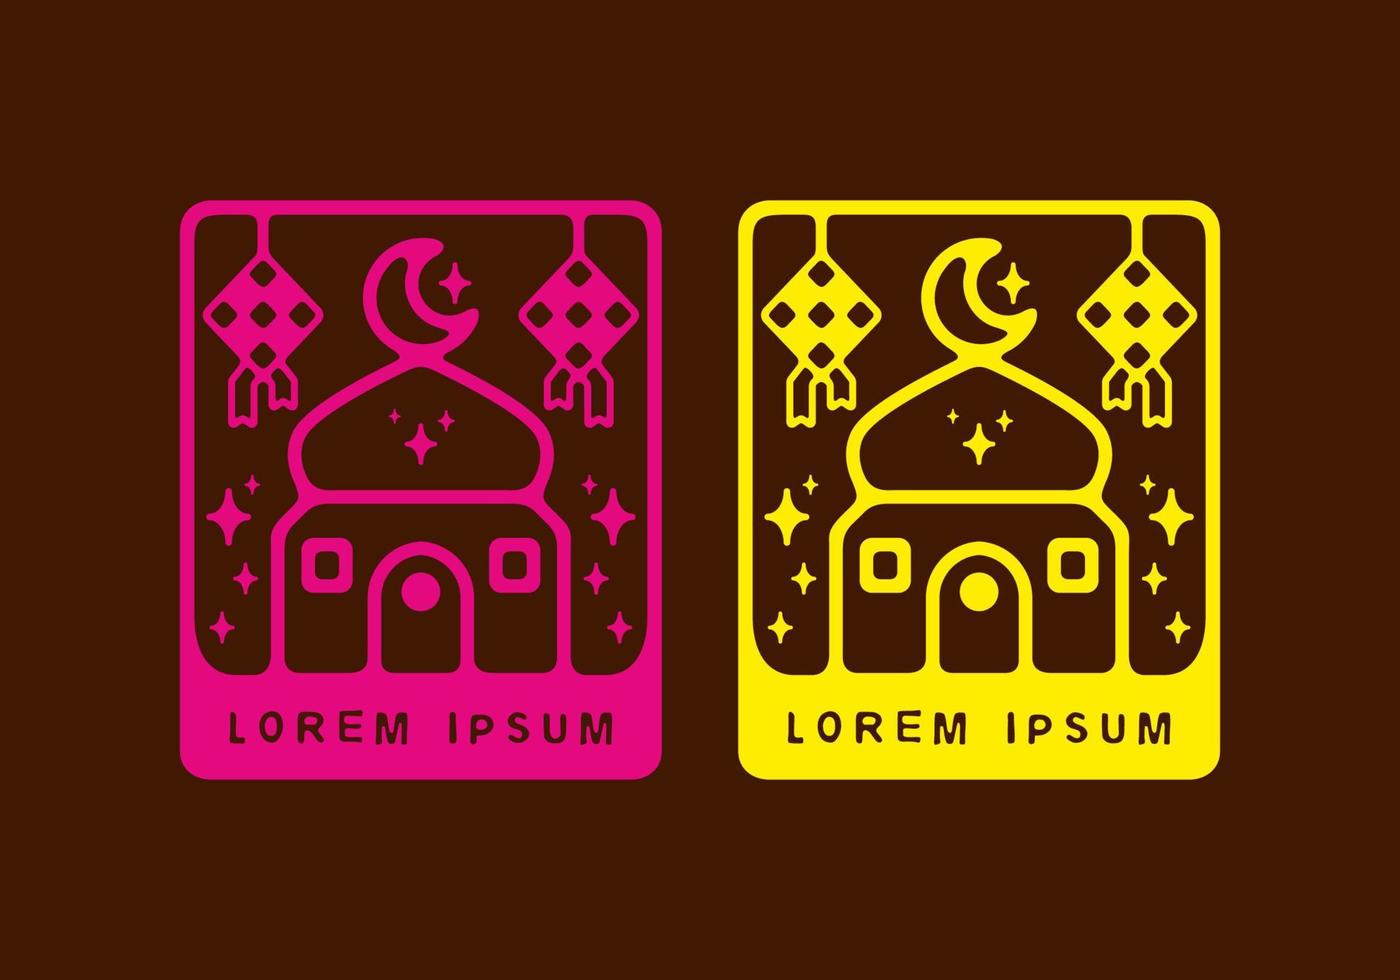 moské och ketupat i rektangelform platt illustration rosa och gul färg vektor